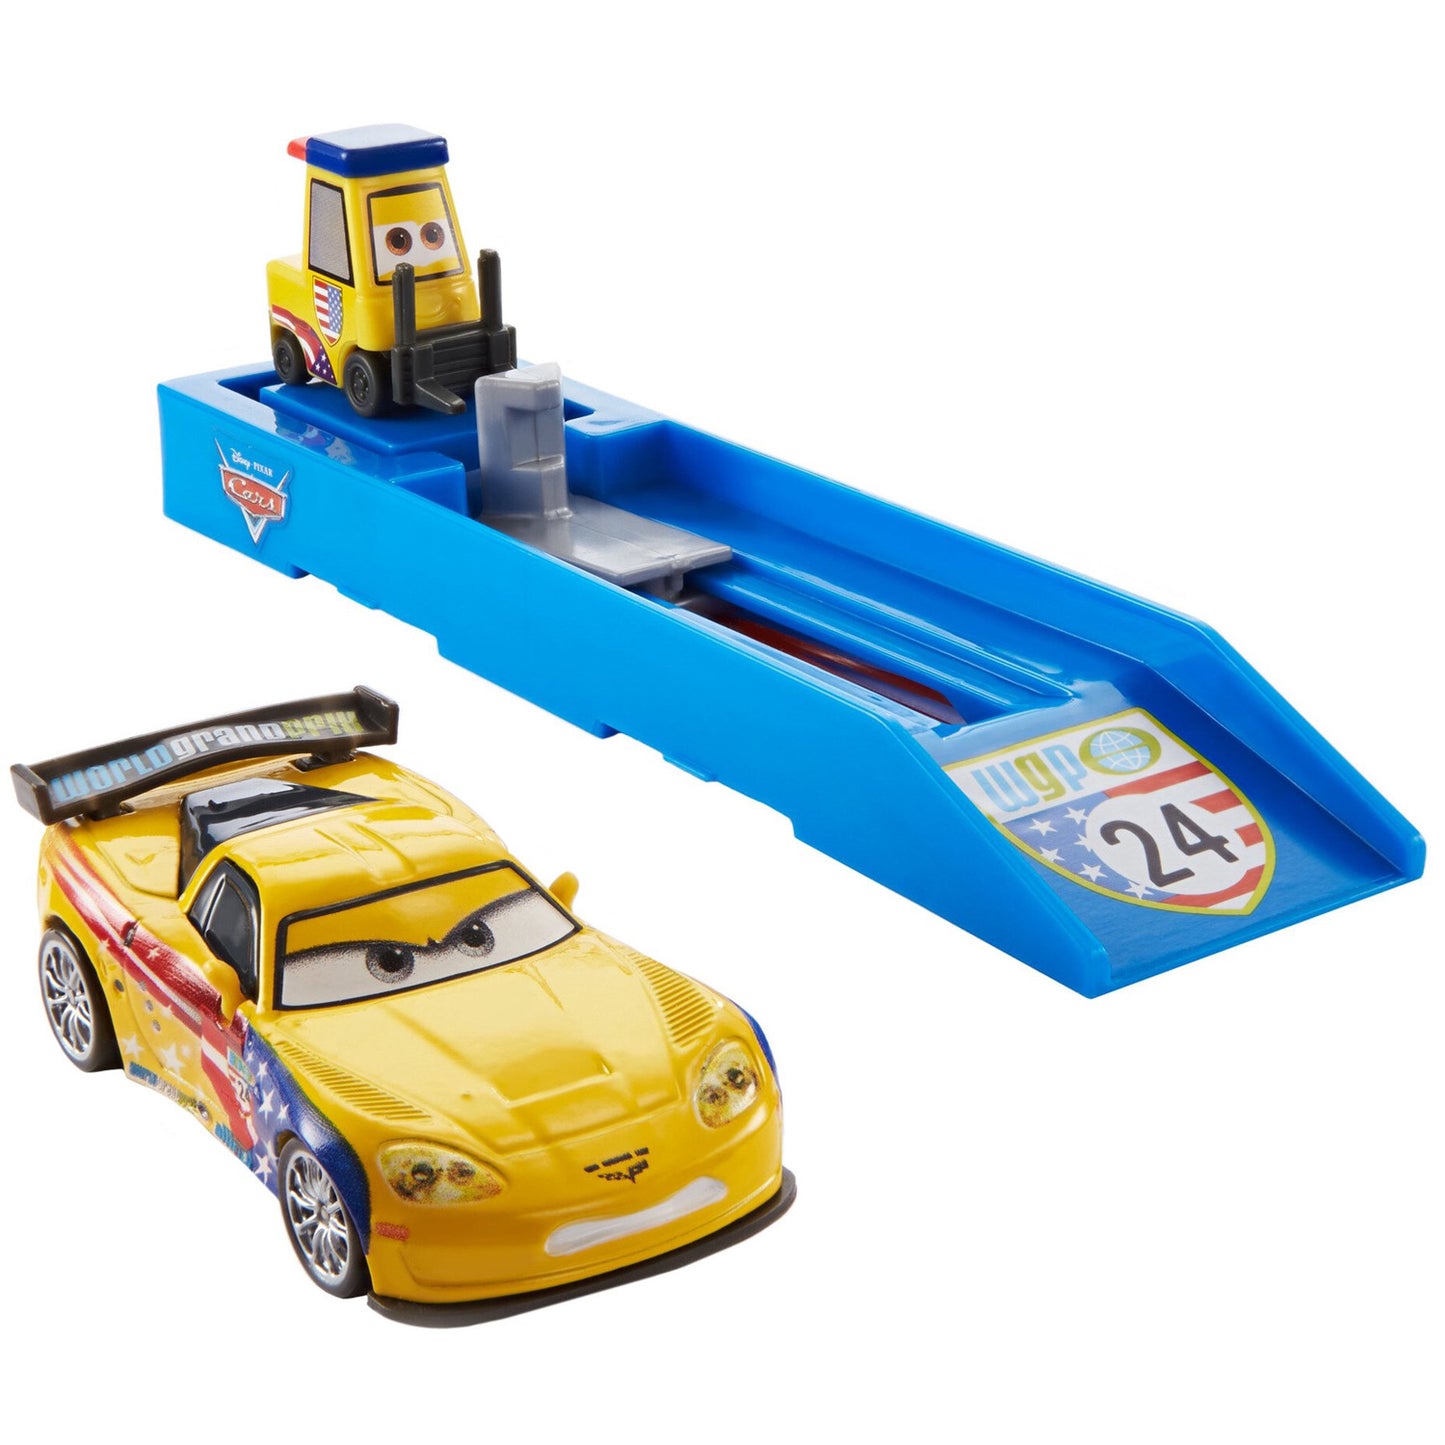 Disney Pixar Cars Jeff Gorvette Connect and Race Launcher